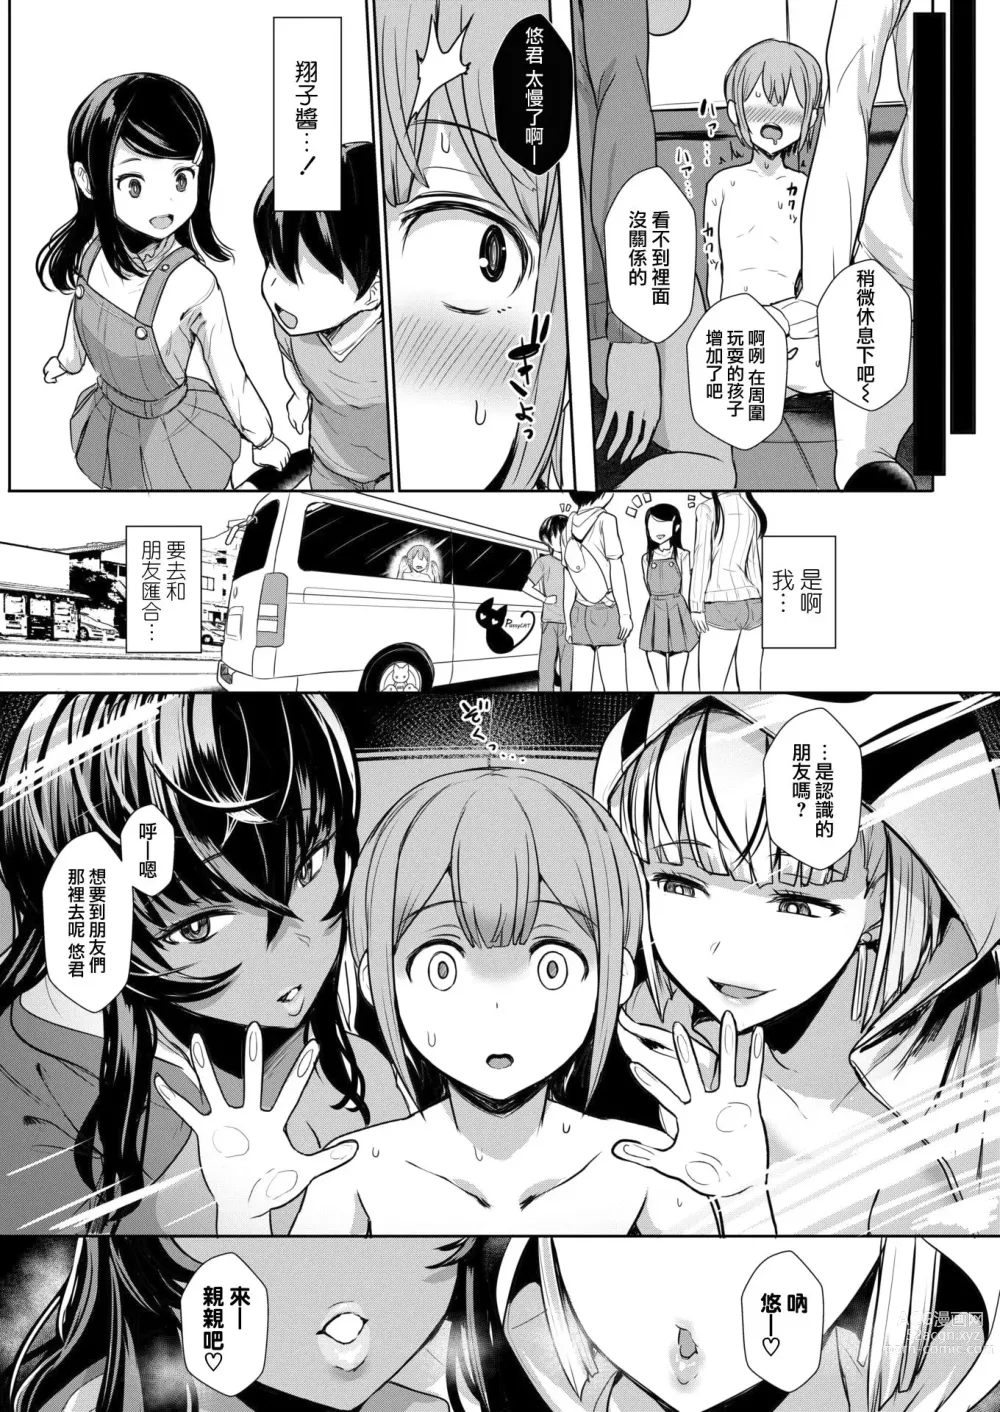 Page 13 of manga TAKEN!!!!